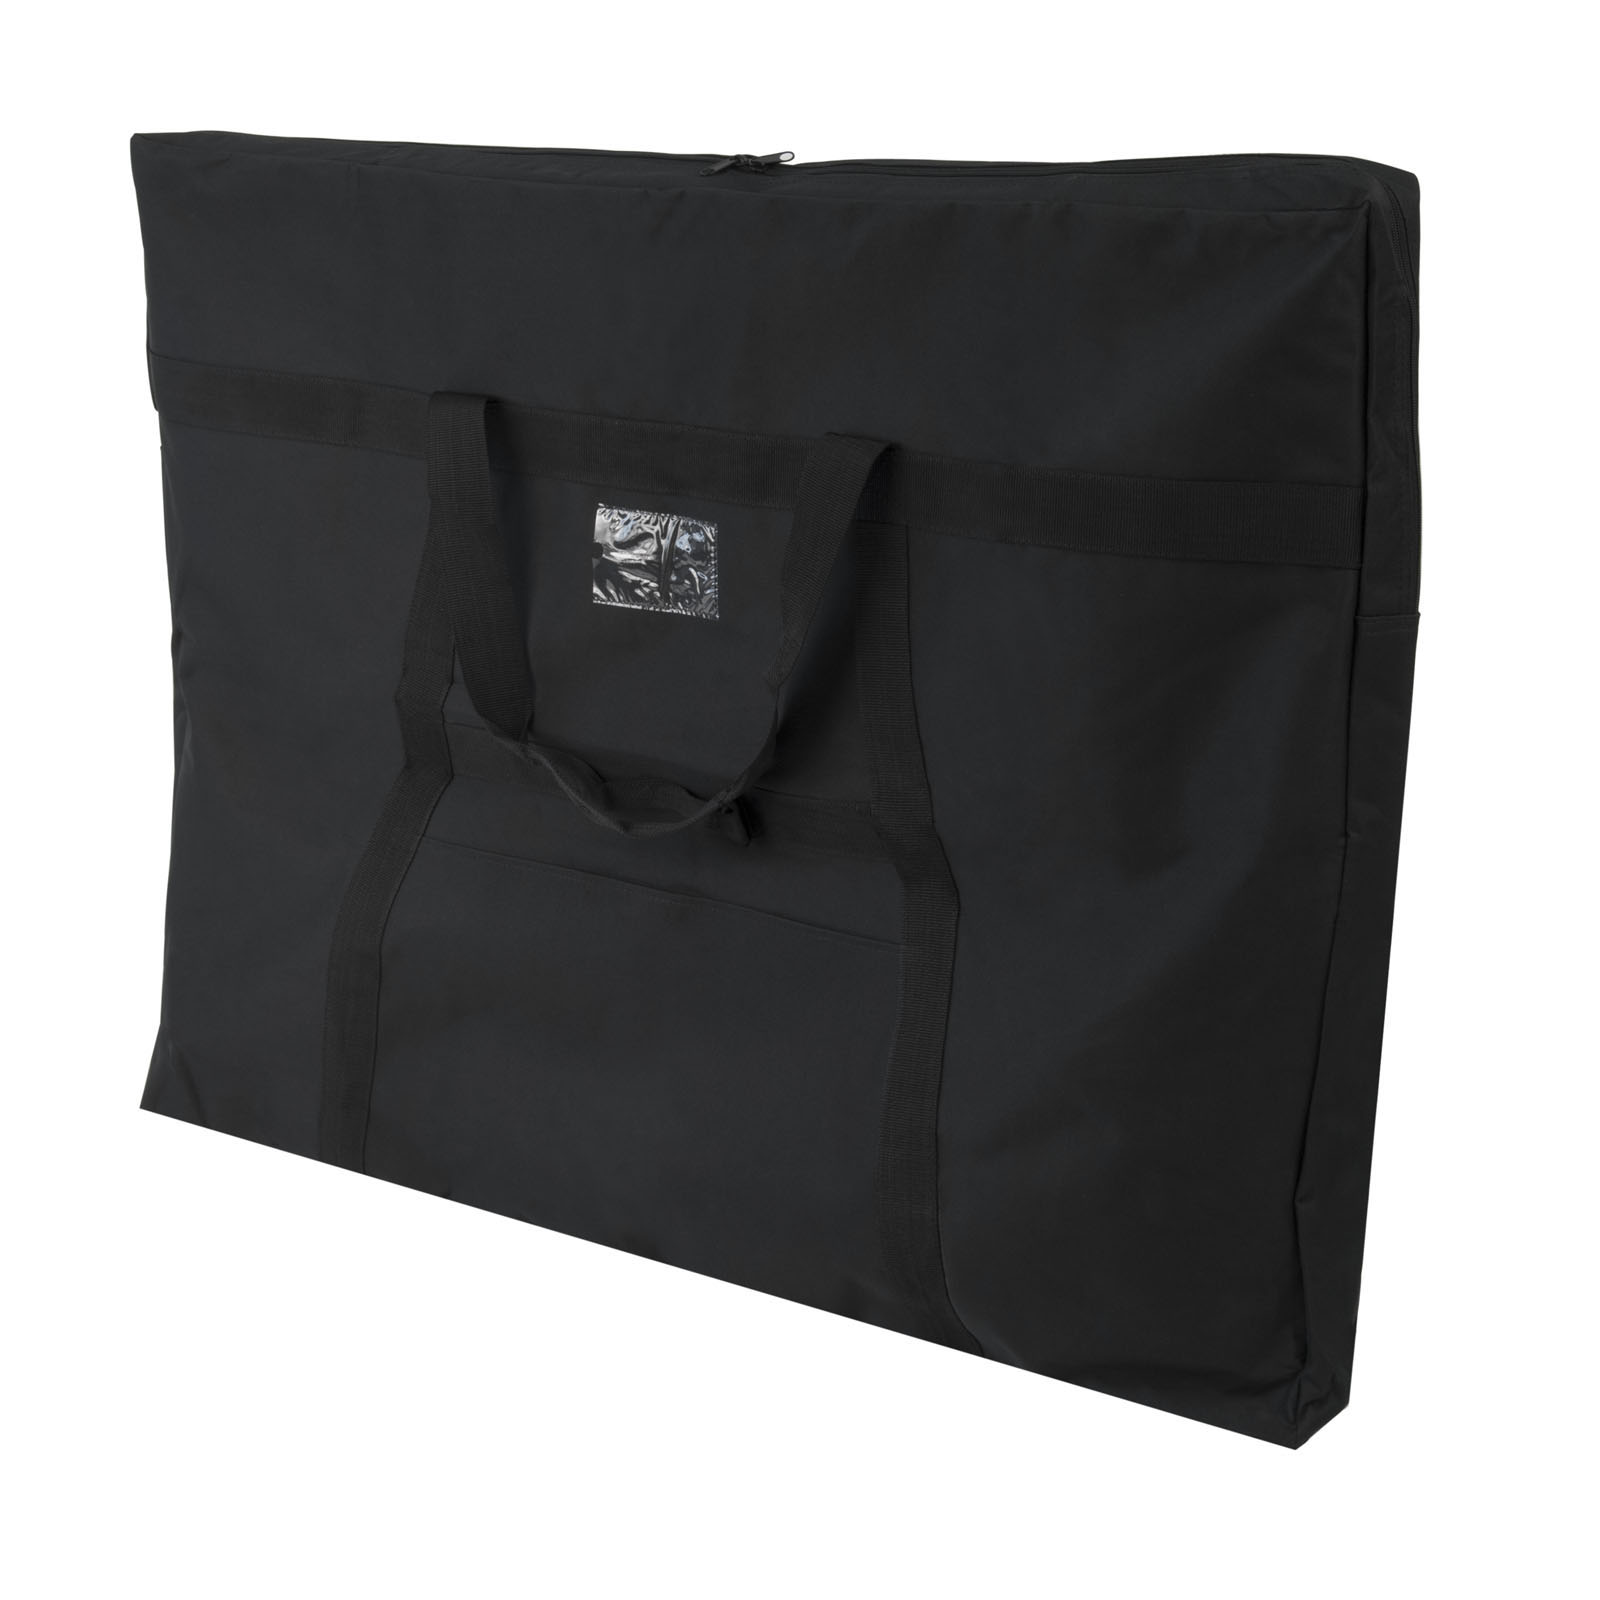 Studio Designs Large Easel Bag for Whiteboard Presentation Easel in Black - image 2 of 5